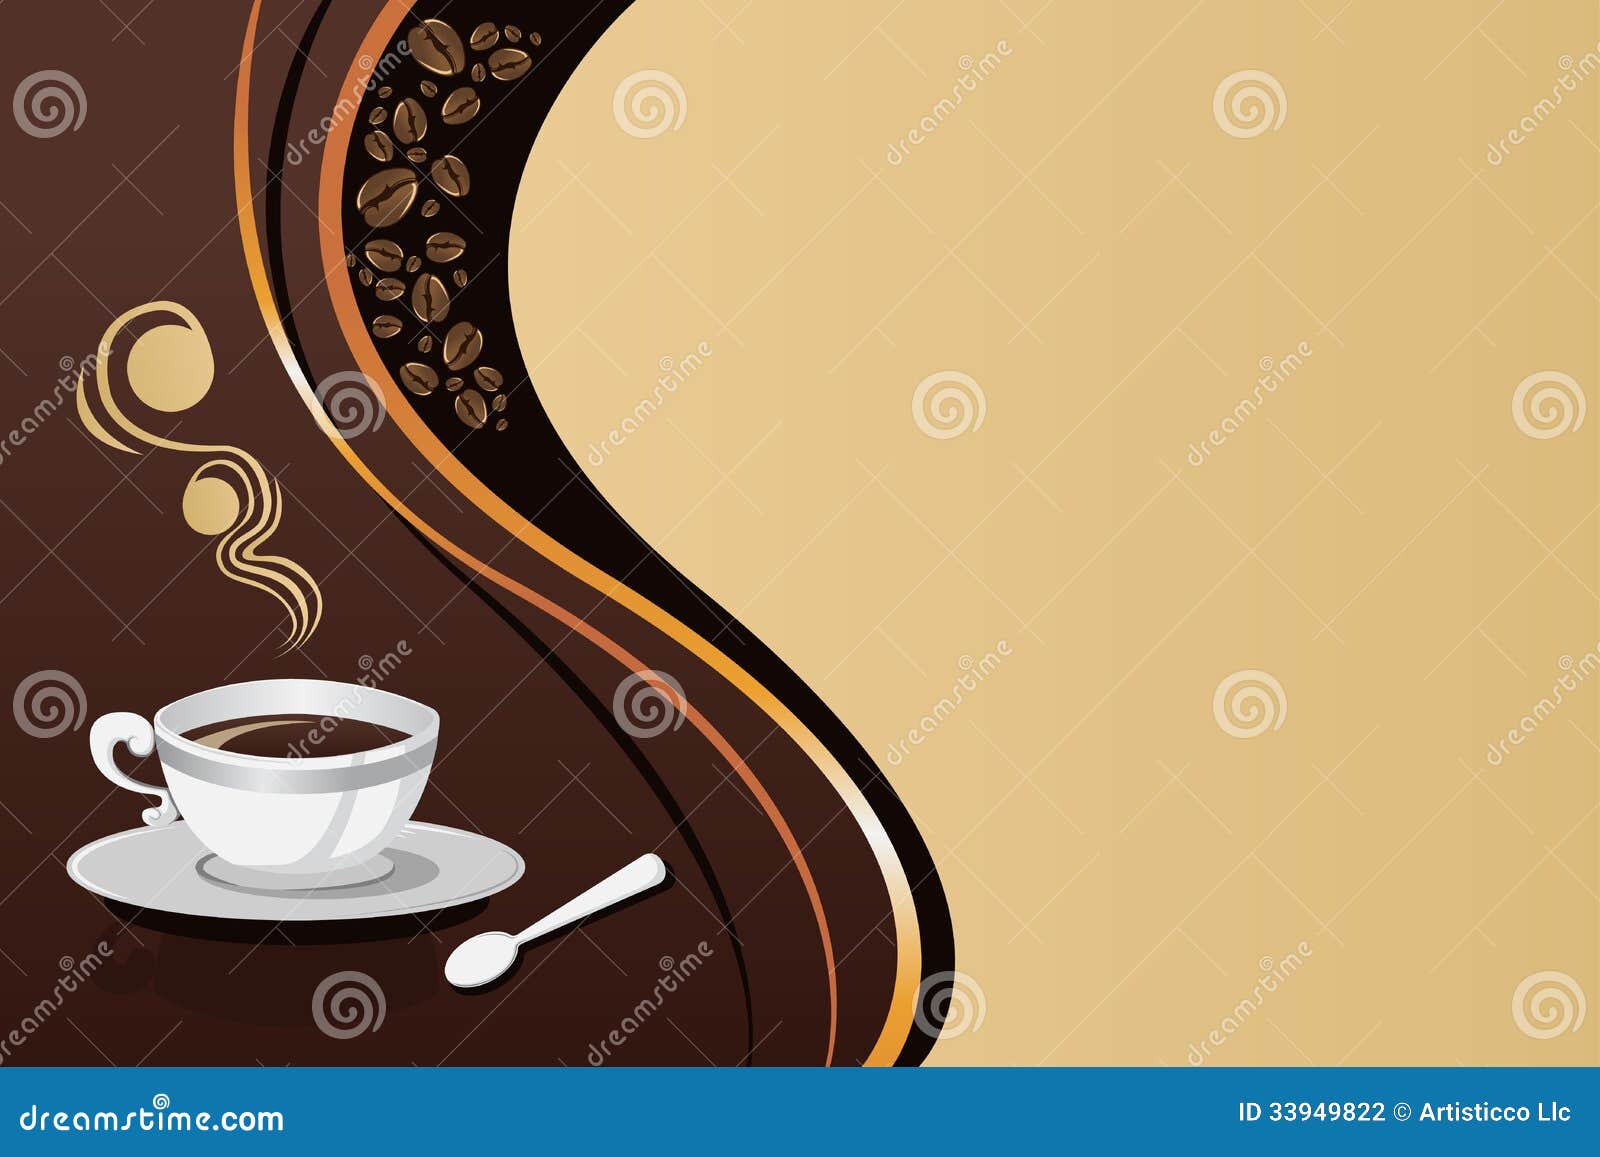 Bạn muốn tìm kiếm một chiếc cốc đựng cà phê đẹp và thuận tiện để sử dụng? Hãy xem những hình ảnh về cốc đựng cà phê và được tư vấn để chọn cho mình một chiếc cốc hoàn hảo nhất.